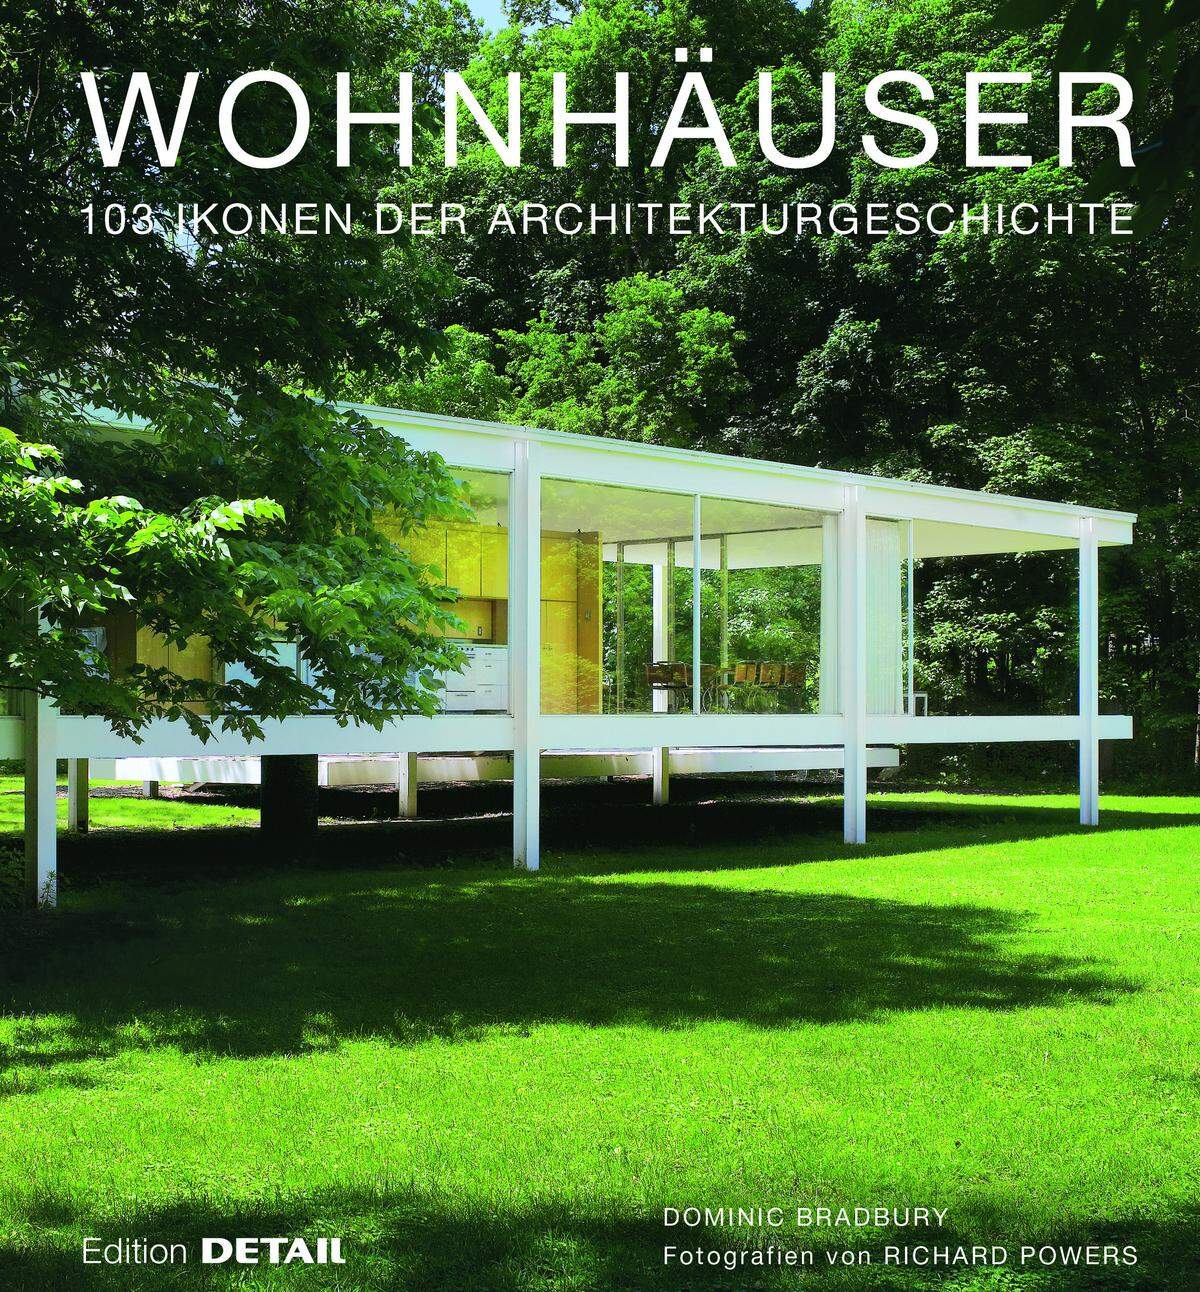 Der Band "Wohnhäuser - 103 Ikonen der Architekturgeschichte" von Dominic Bradbury, Fotografien von Richard Powers. Erschienen bei Edition DETAIL, www.detail.de.